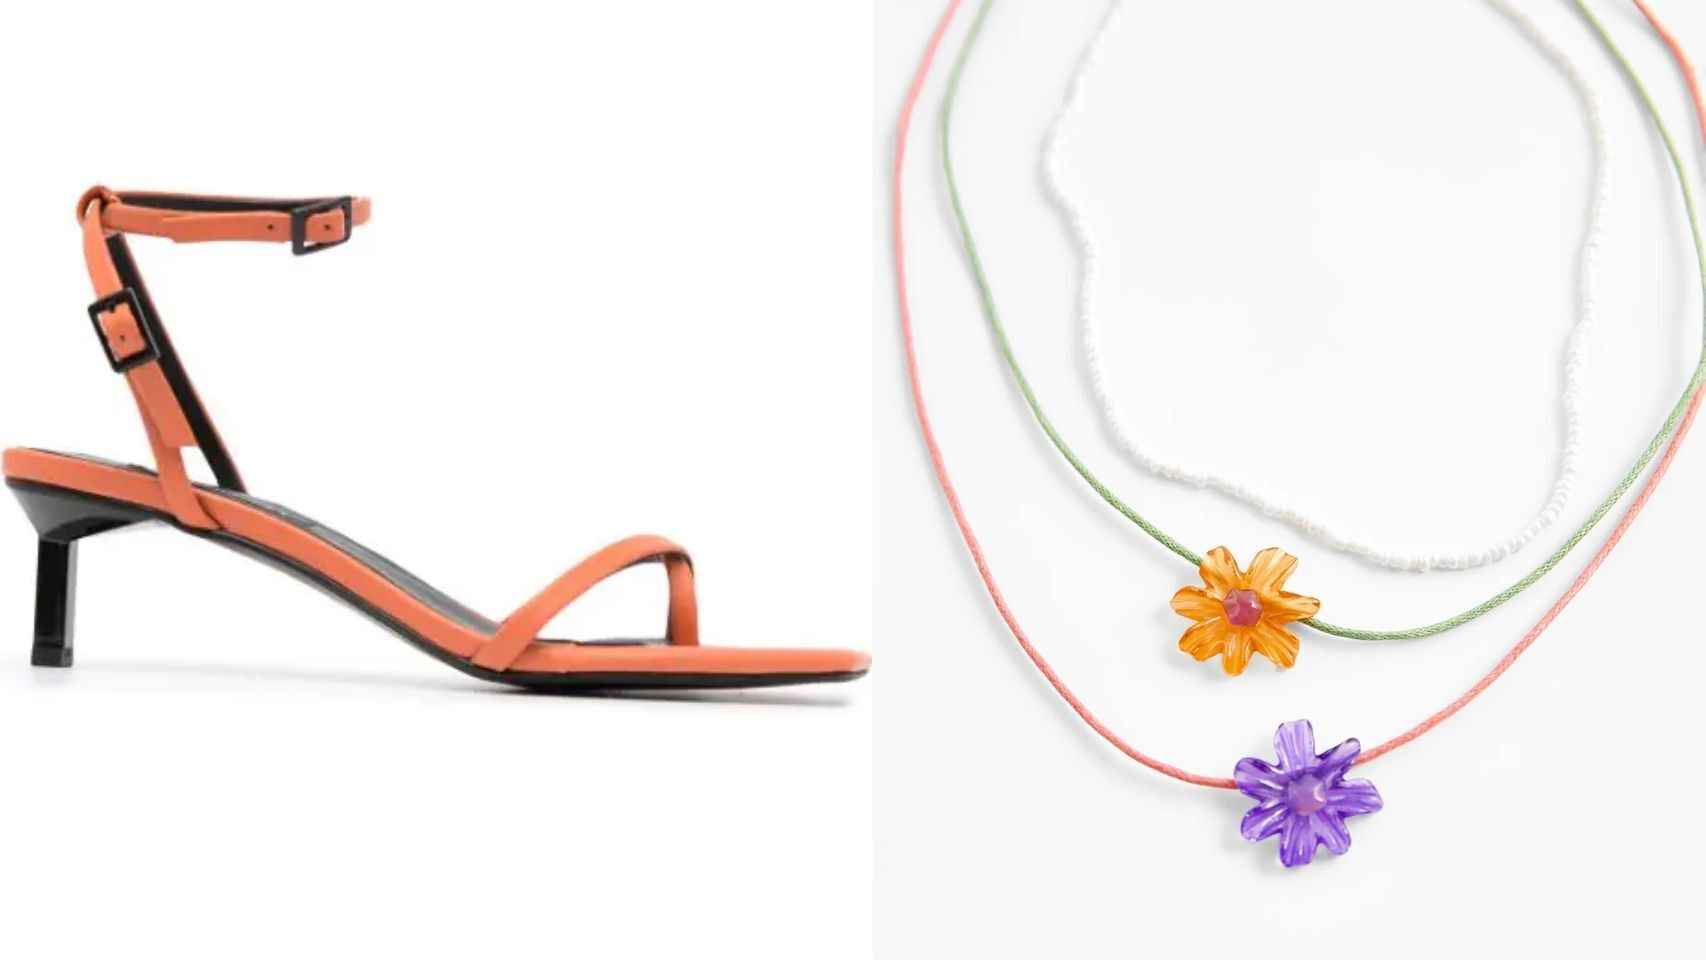 La 'influencer' optaba por unas sandalias de la marca Senso  y unos collares de Zara para brindar un toque de color al 'look'.